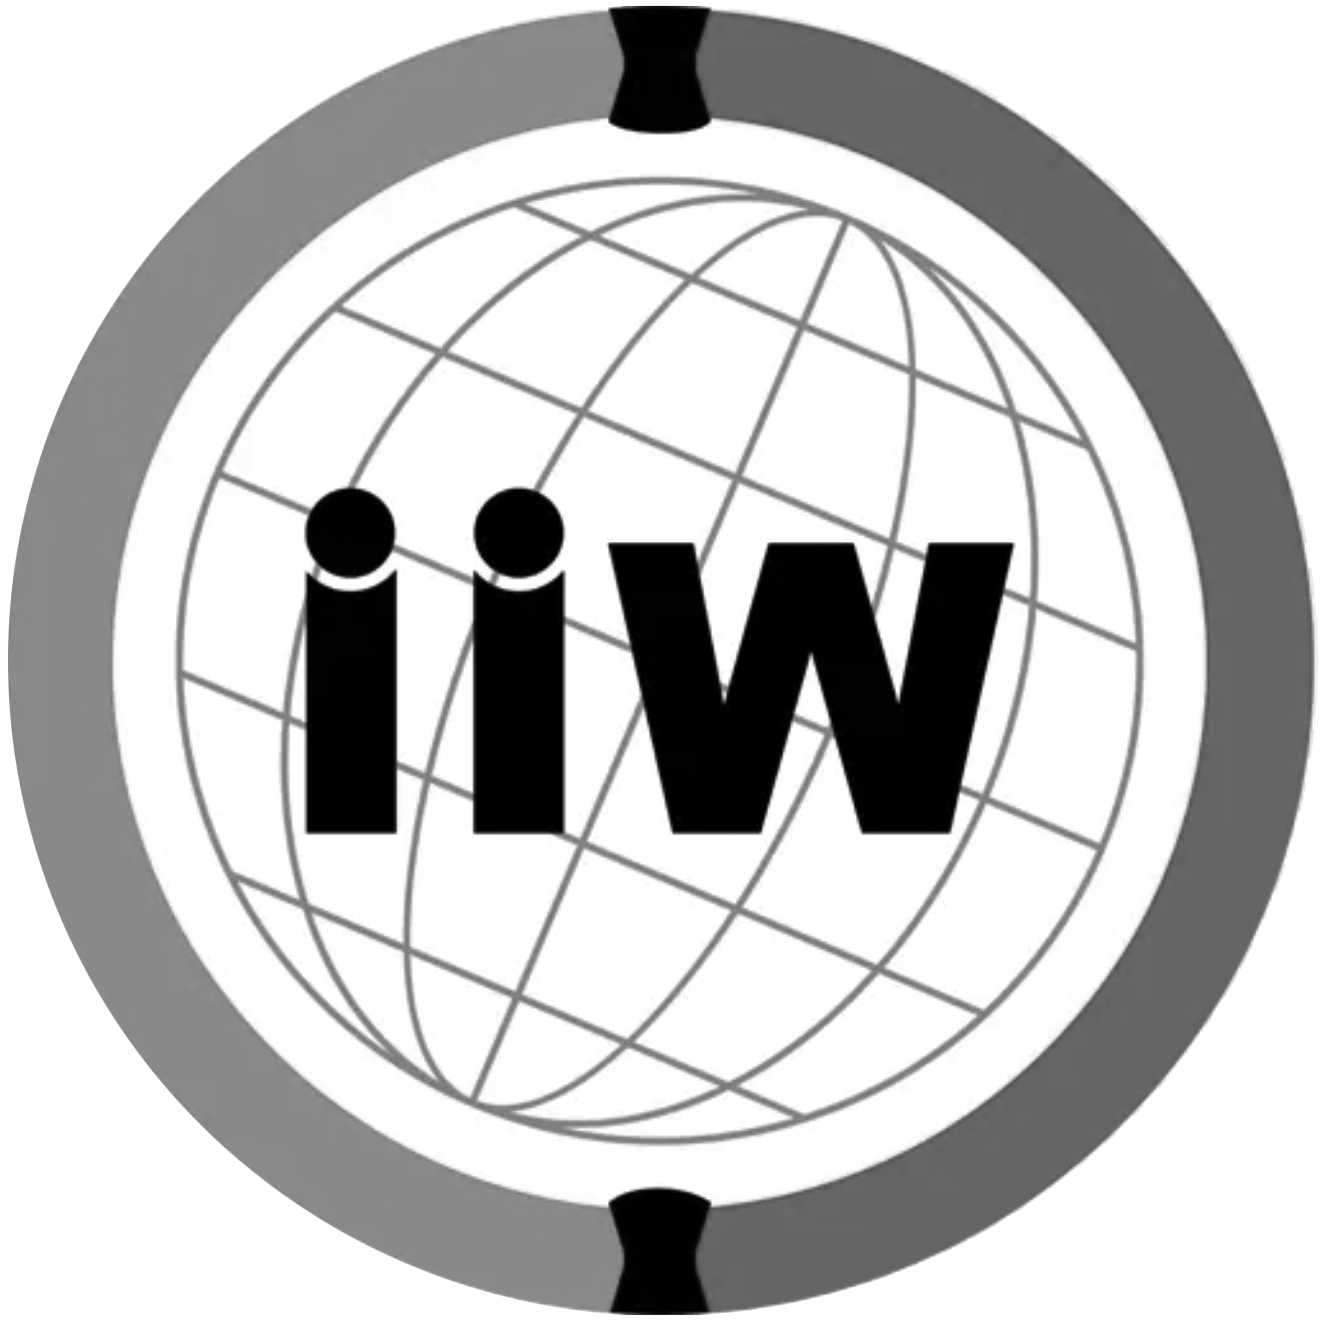 iiw logo